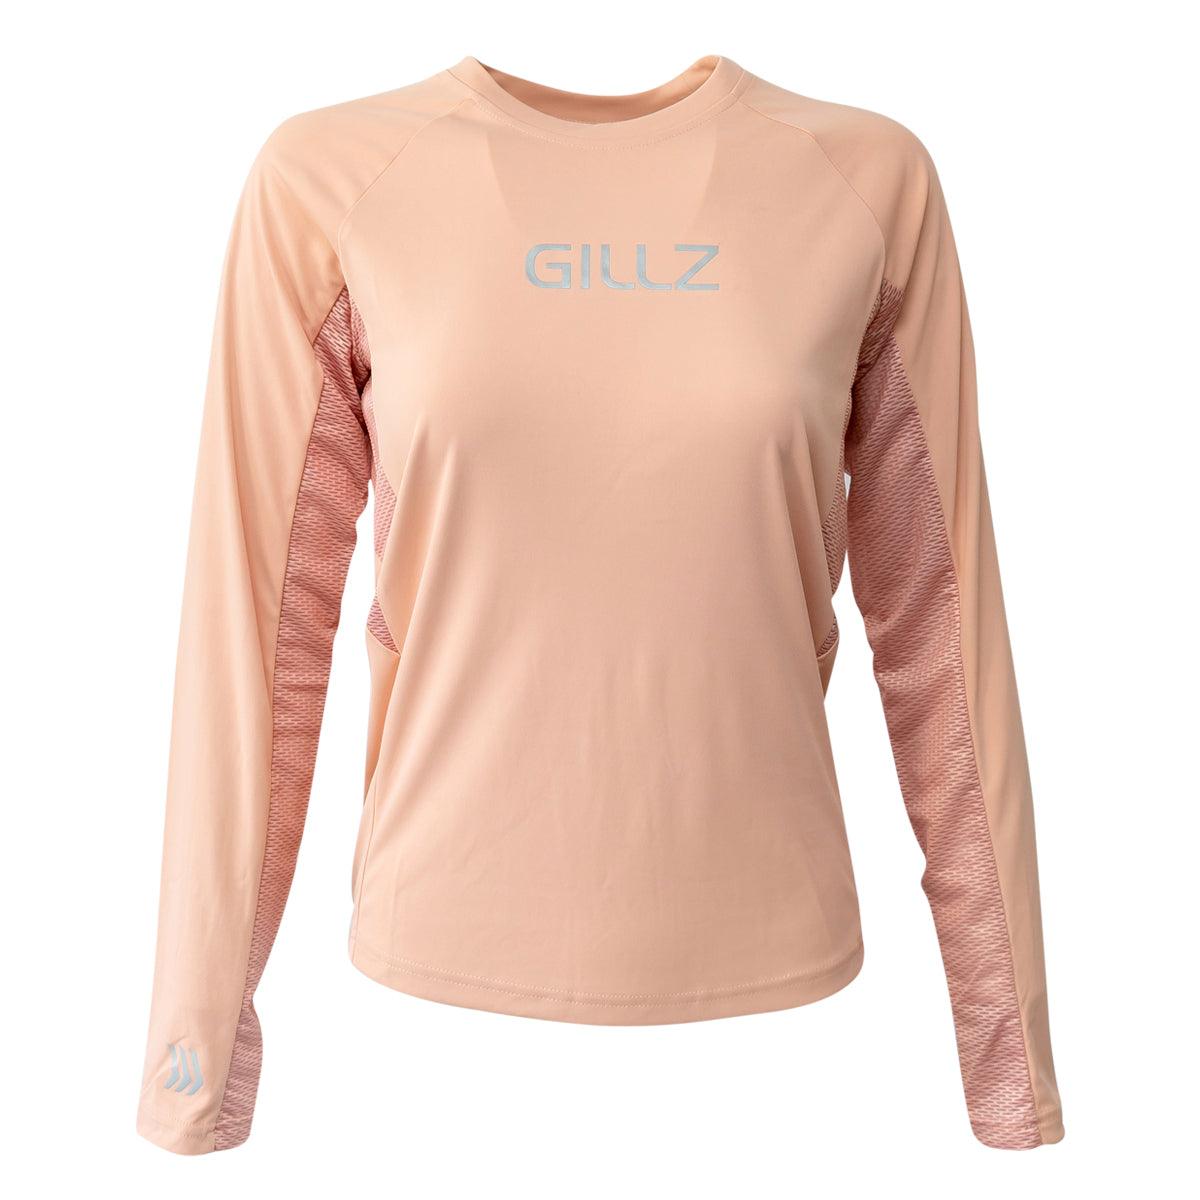 Gillz - Tournament Long Sleeve Shirt, Dusty Pink (All Sizes) - Technical Outdoor Gear